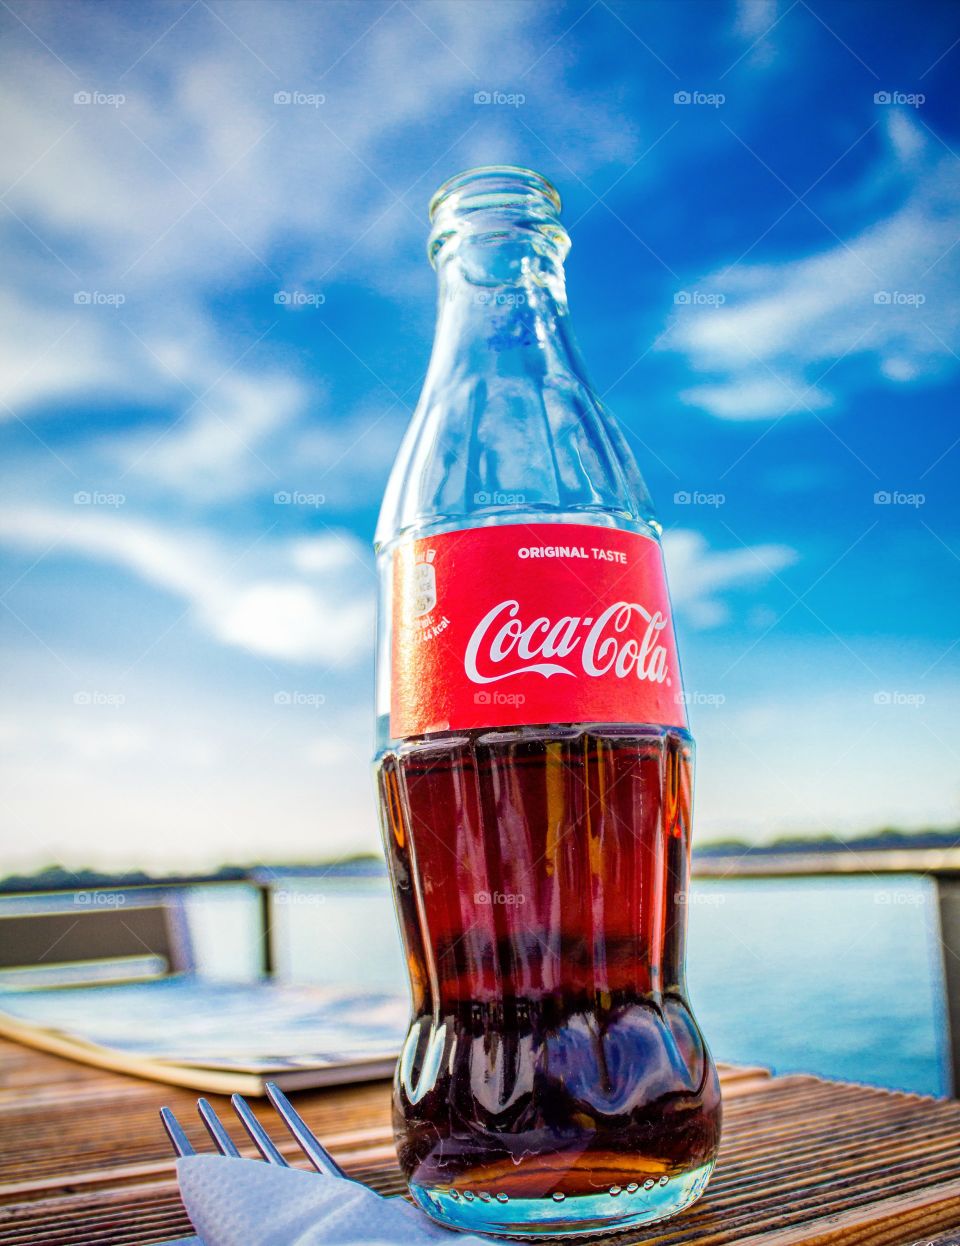 Sunny day, Coca-Cola, vacation.